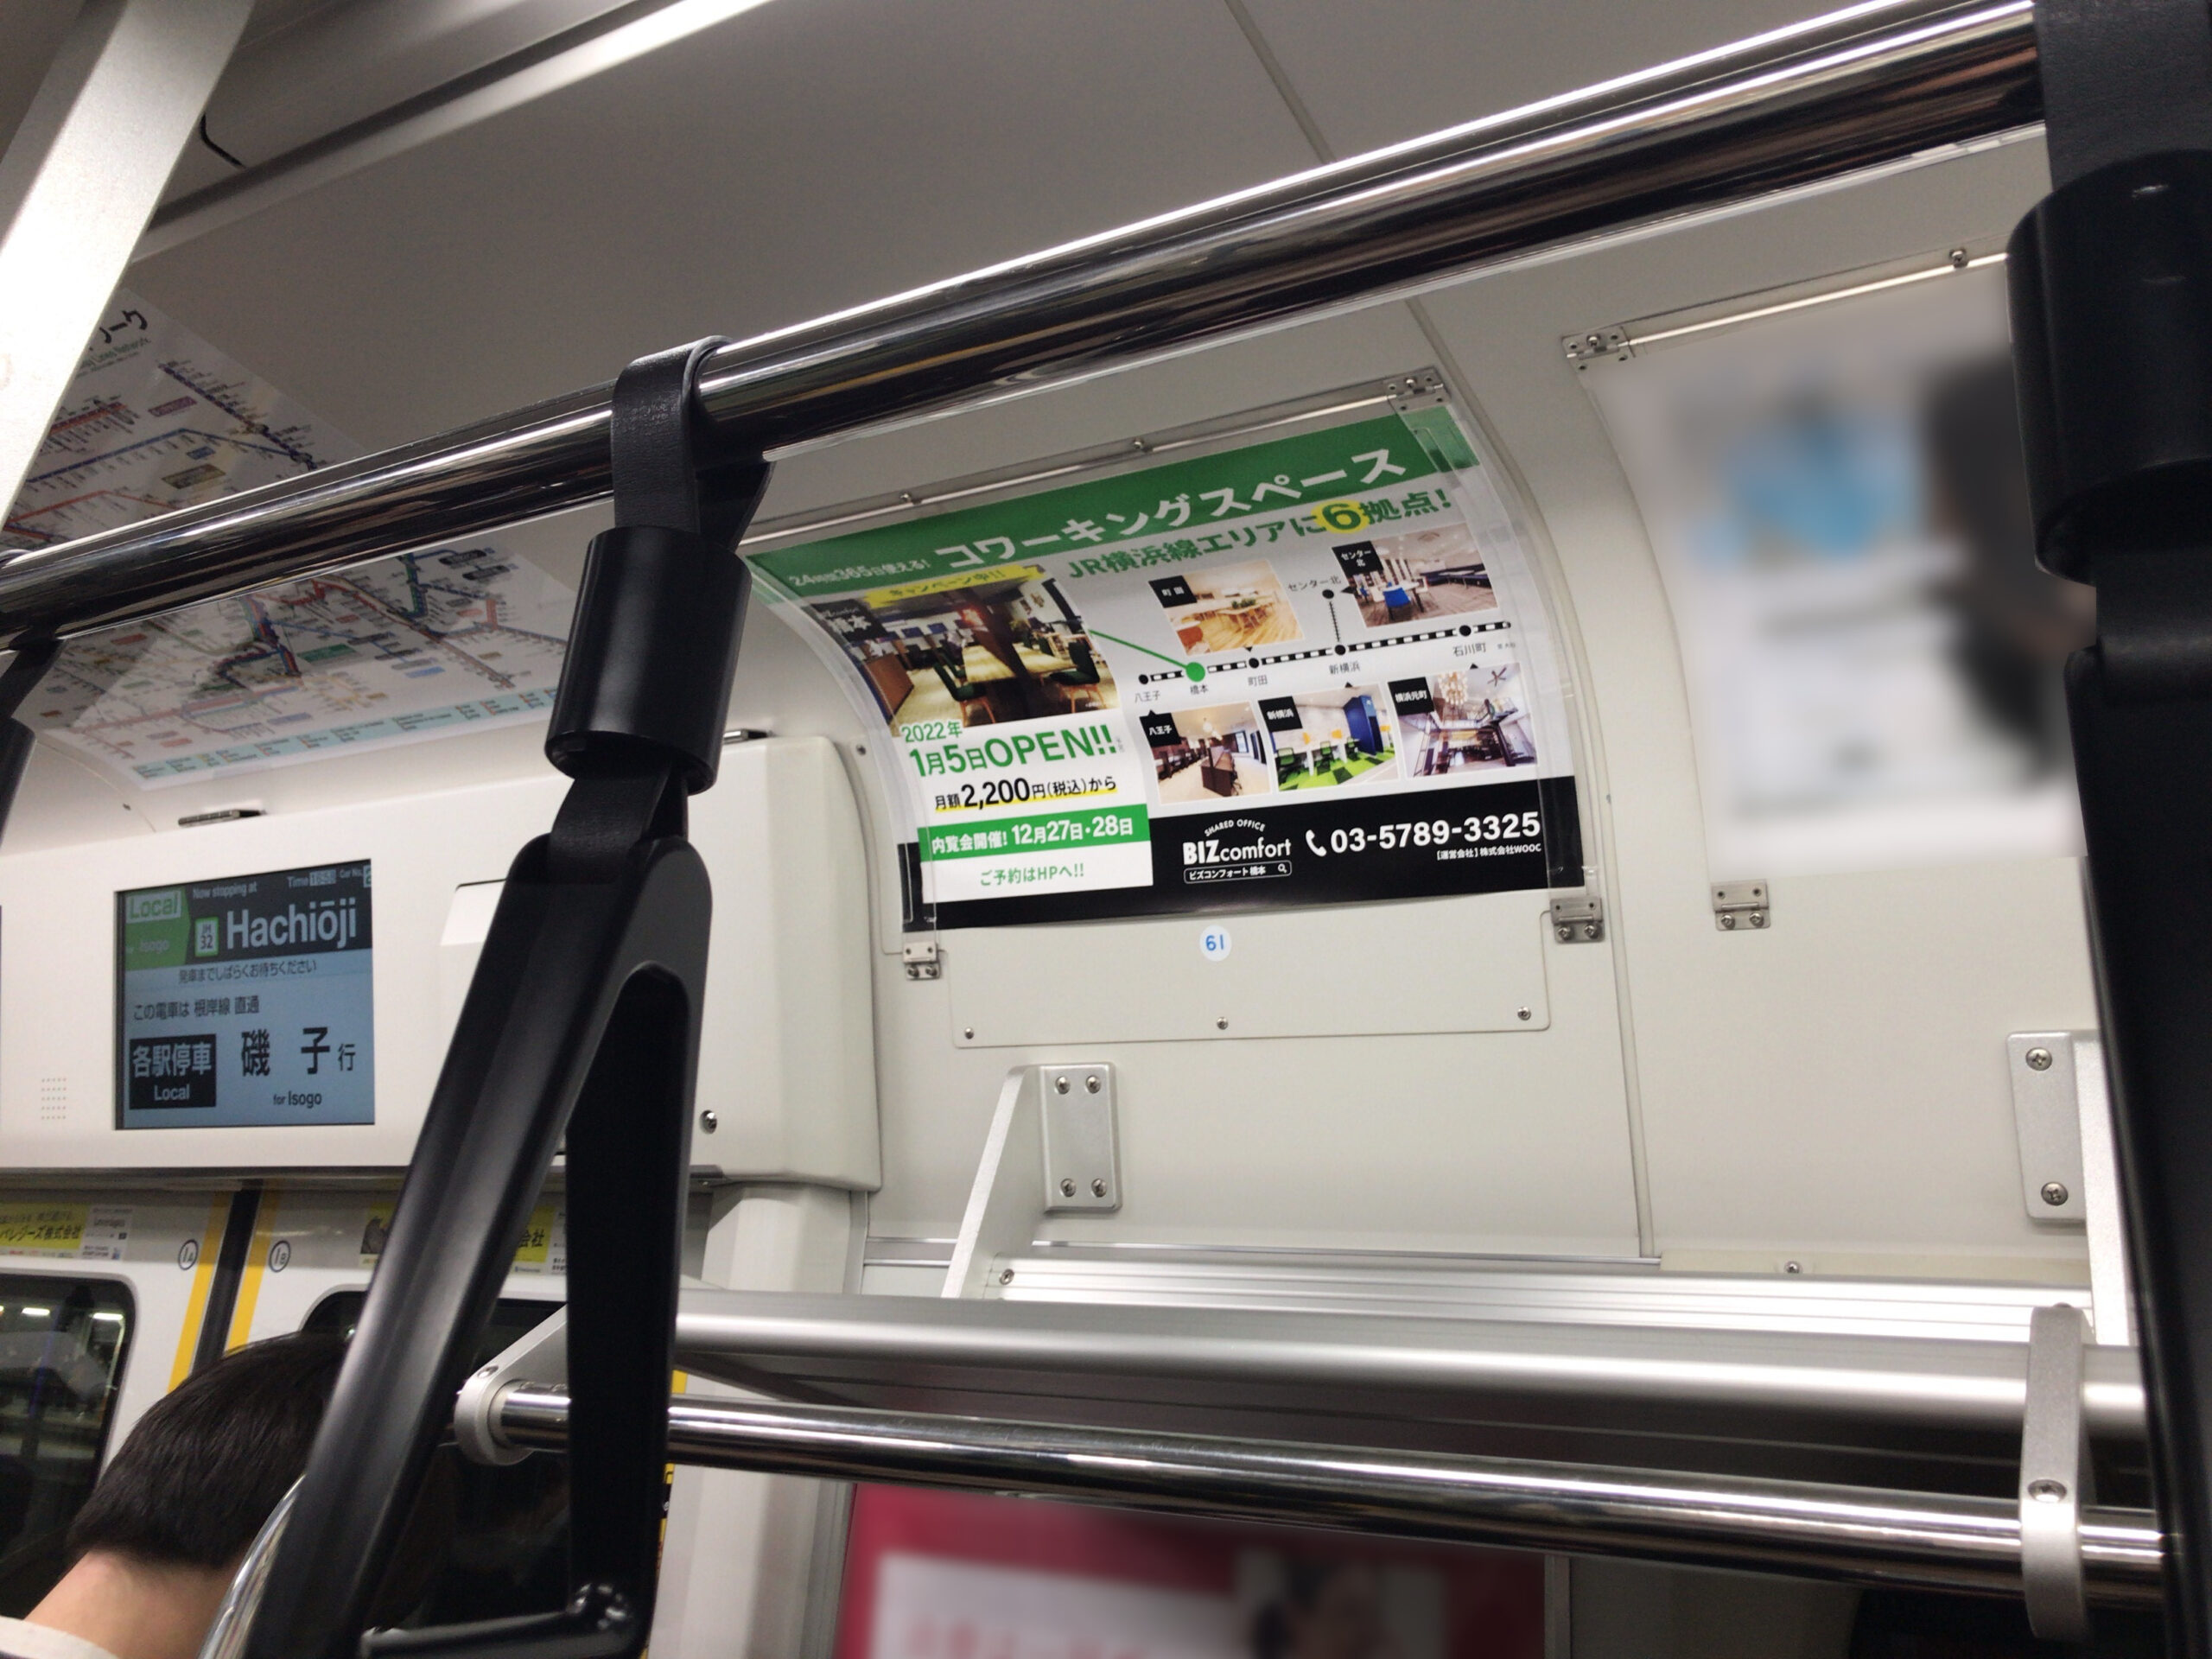 JR横浜線まど上広告